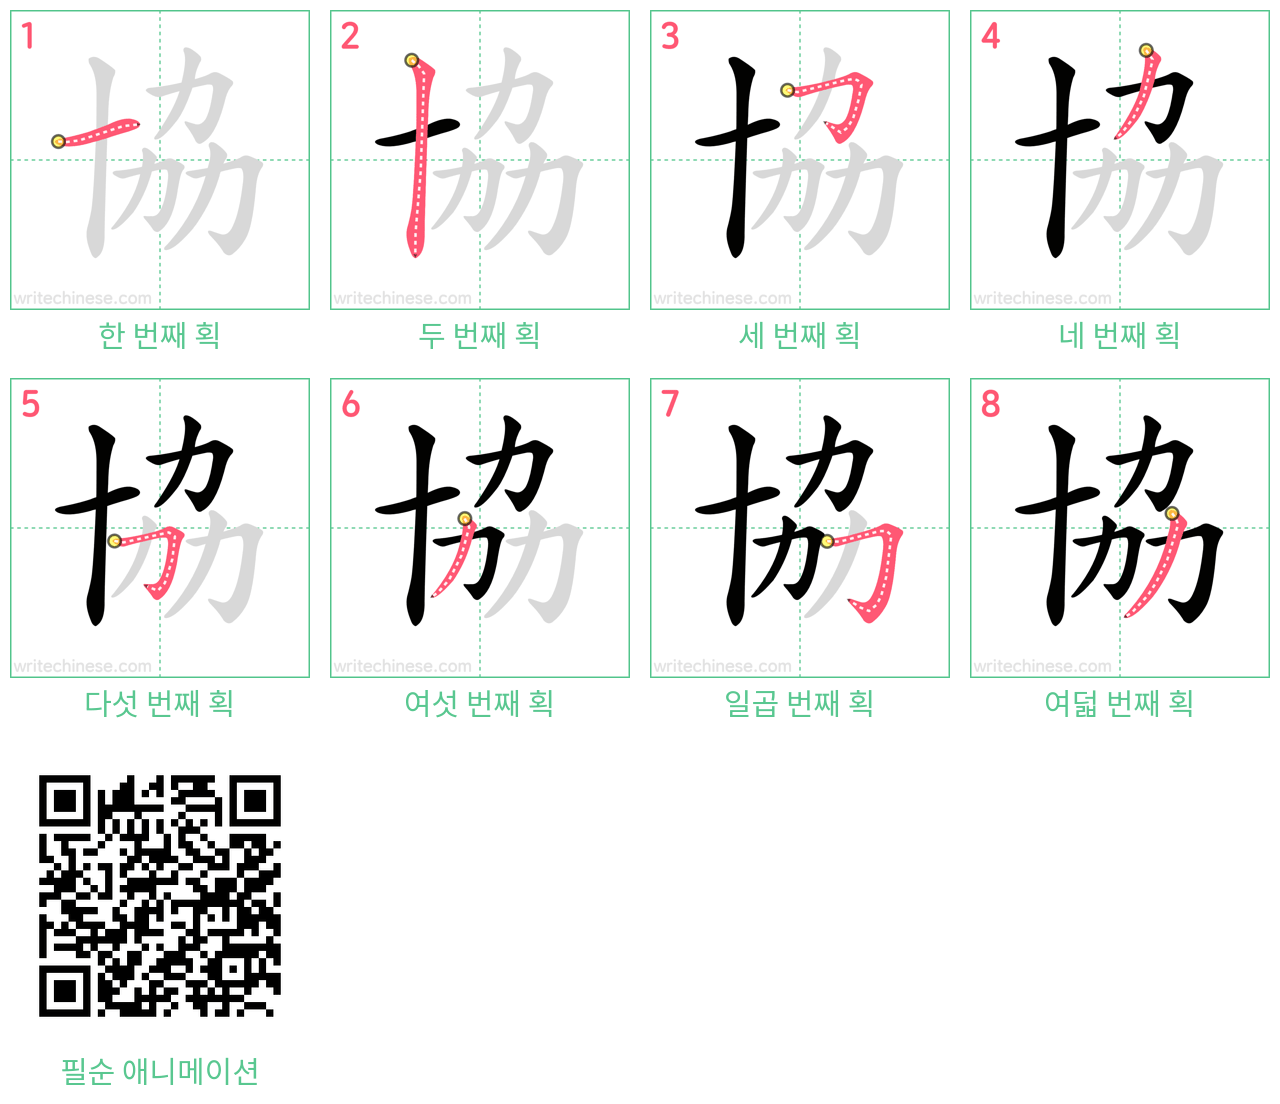 協 step-by-step stroke order diagrams